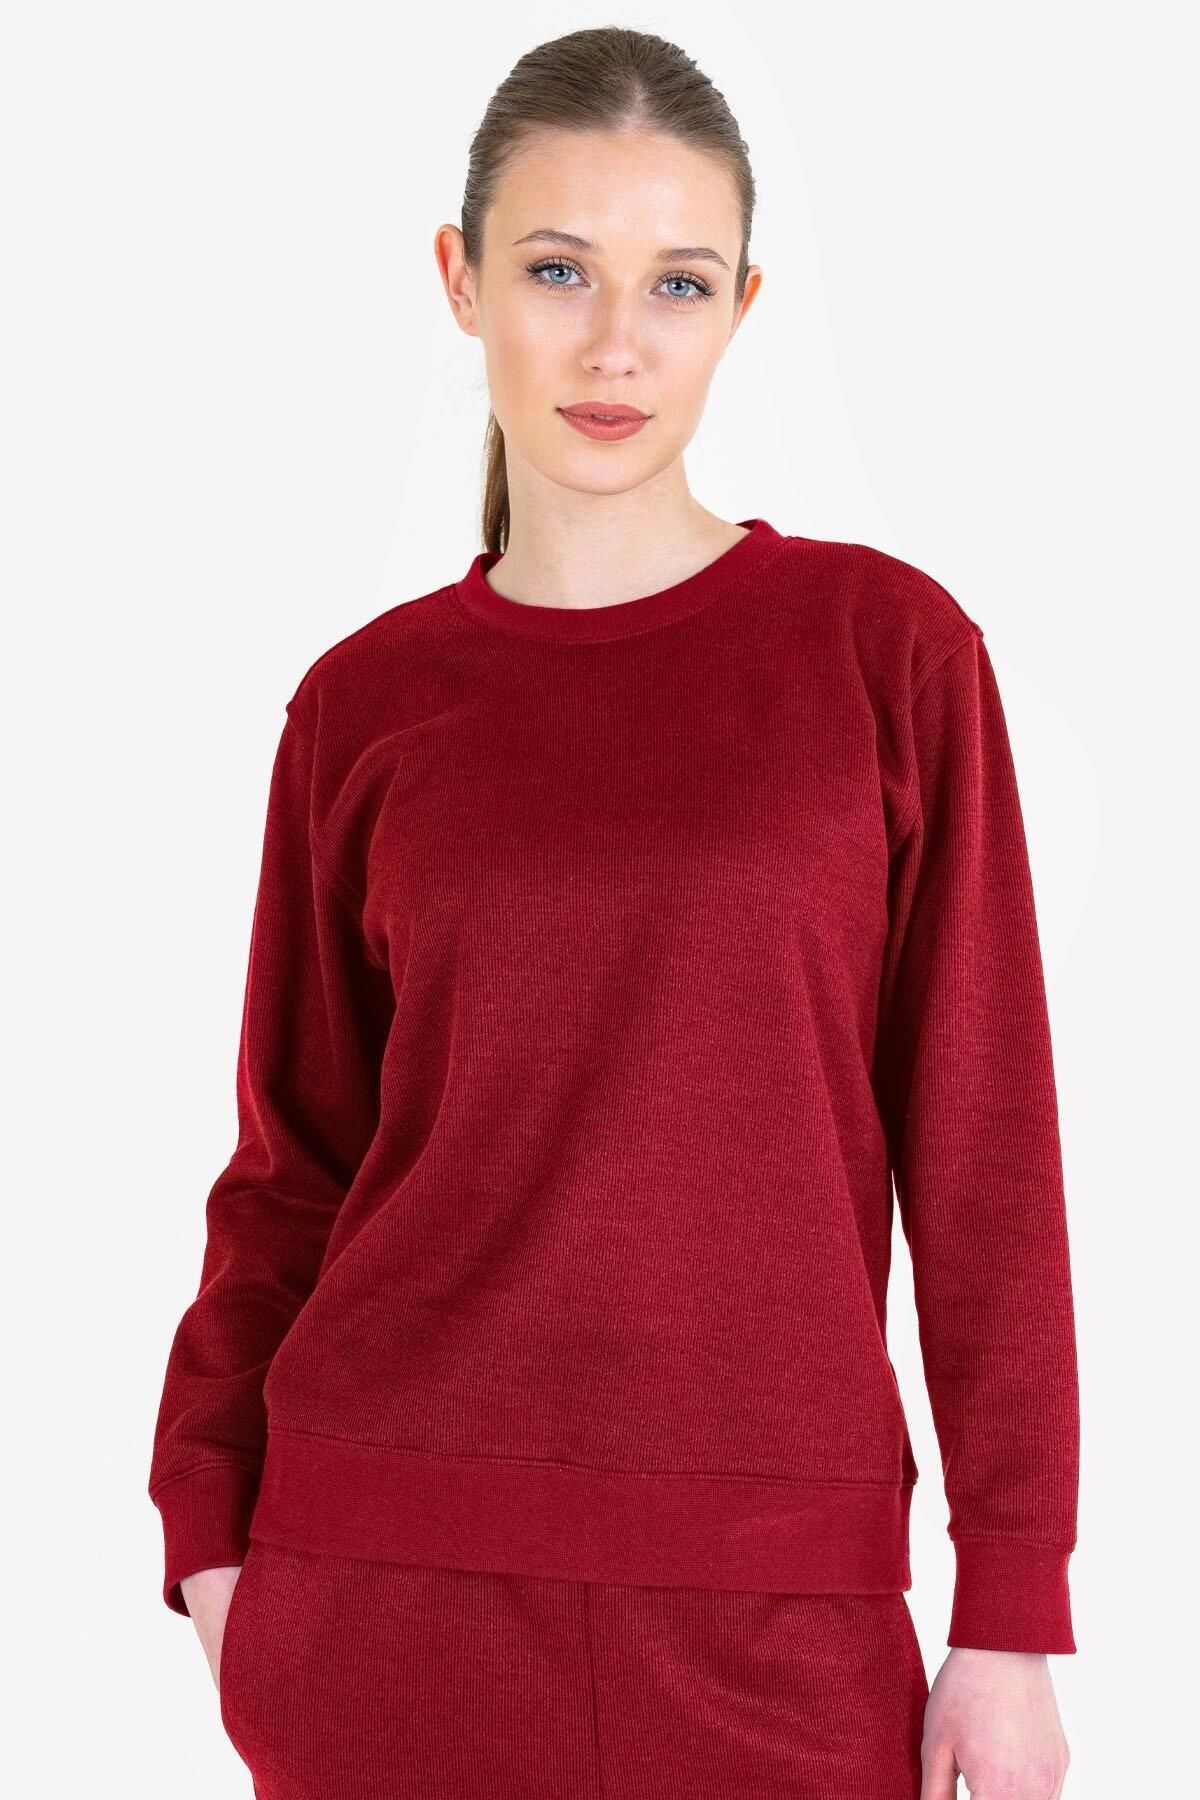 Lescon Kadın Sweatshirt 23ntbb002217-003 Kırmızı Kadın Sweatshirt 23ntbb002217-003 Kırmız